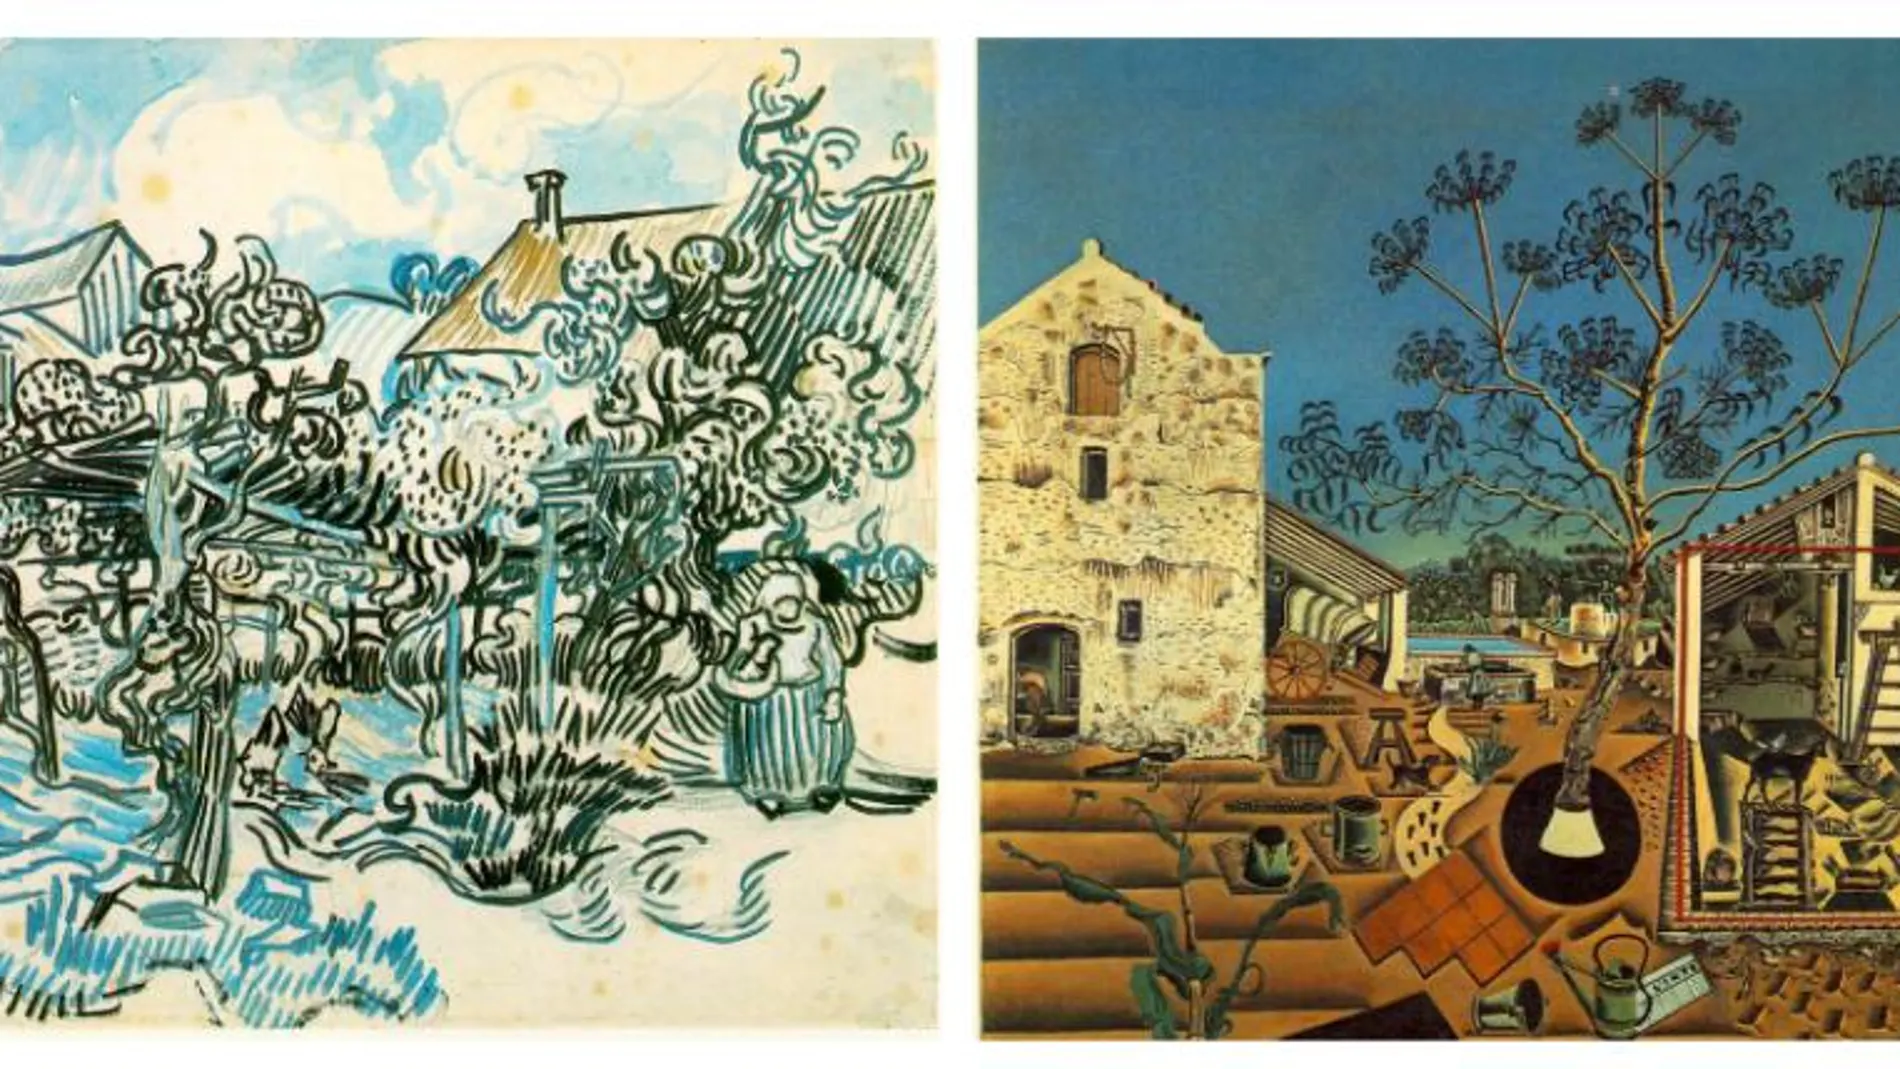 El software vinculó ‘Viejo viñedo con mujer campesina’ de Van Gogh con ‘La Masía’ de Miró que, aunque de estilo muy diferente, comparten paisajes y simbolismo